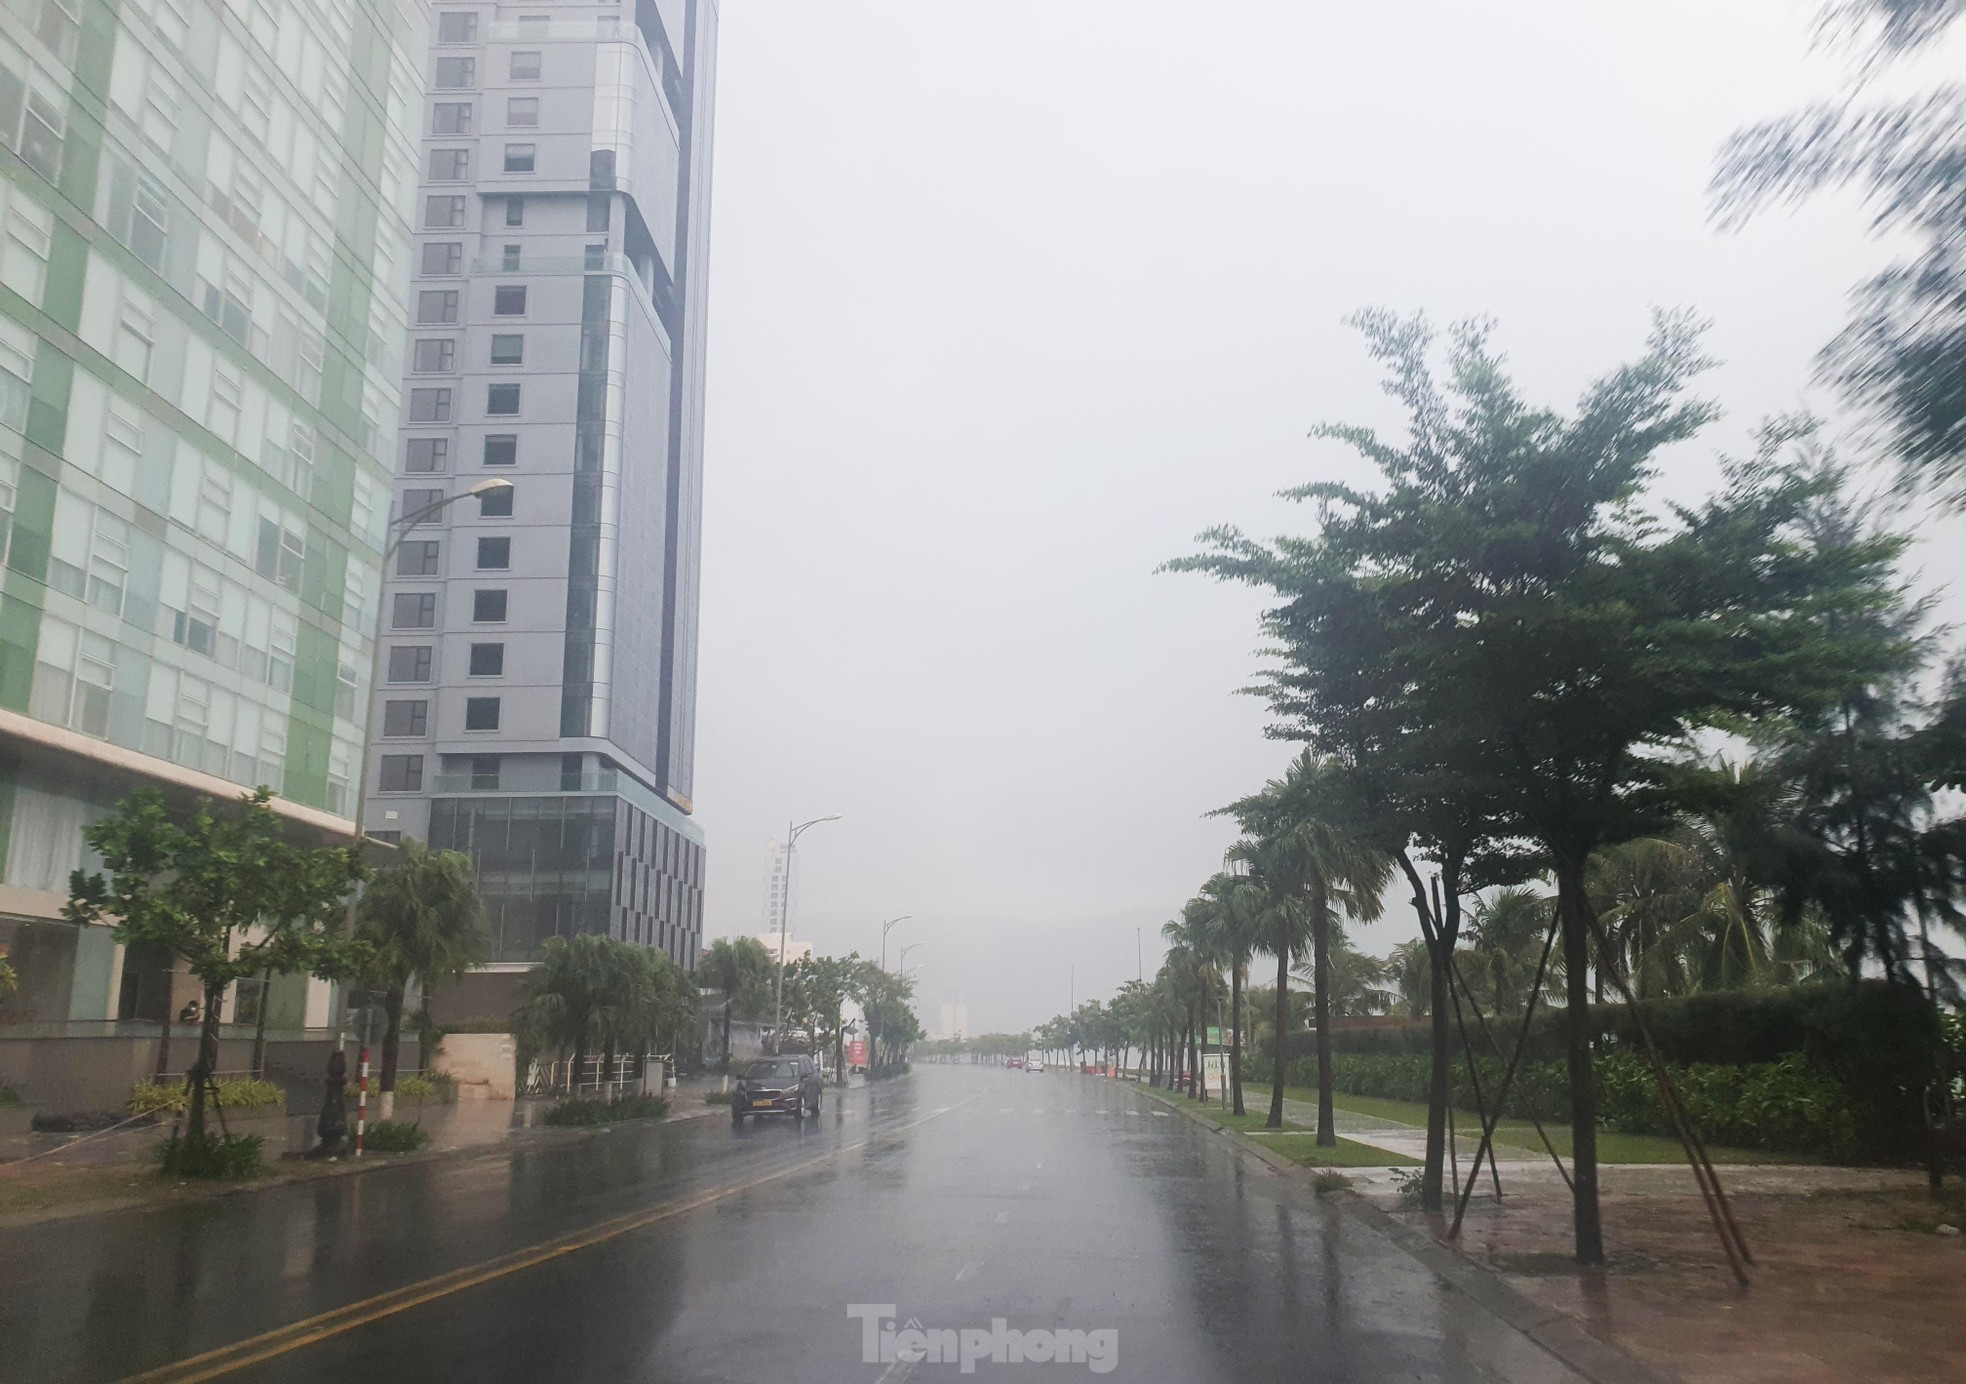 Sóng lớn liếm sát bờ biển Đà Nẵng, khách sạn thuê loạt container chắn bão - Ảnh 4.